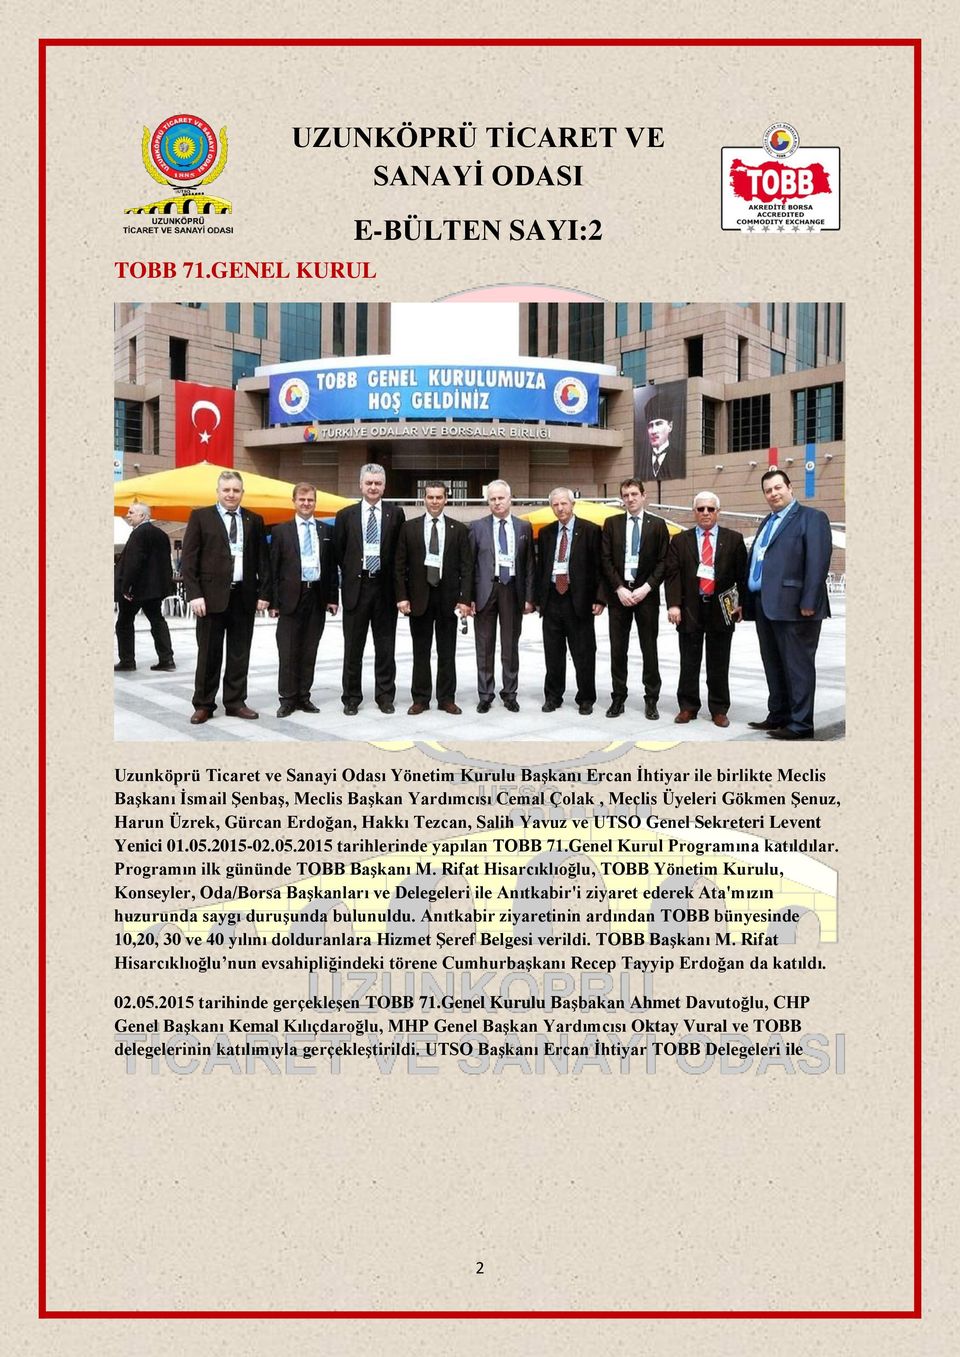 Başkan Yardımcısı Cemal Çolak, Meclis Üyeleri Gökmen Şenuz, Harun Üzrek, Gürcan Erdoğan, Hakkı Tezcan, Salih Yavuz ve UTSO Genel Sekreteri Levent Yenici 01.05.